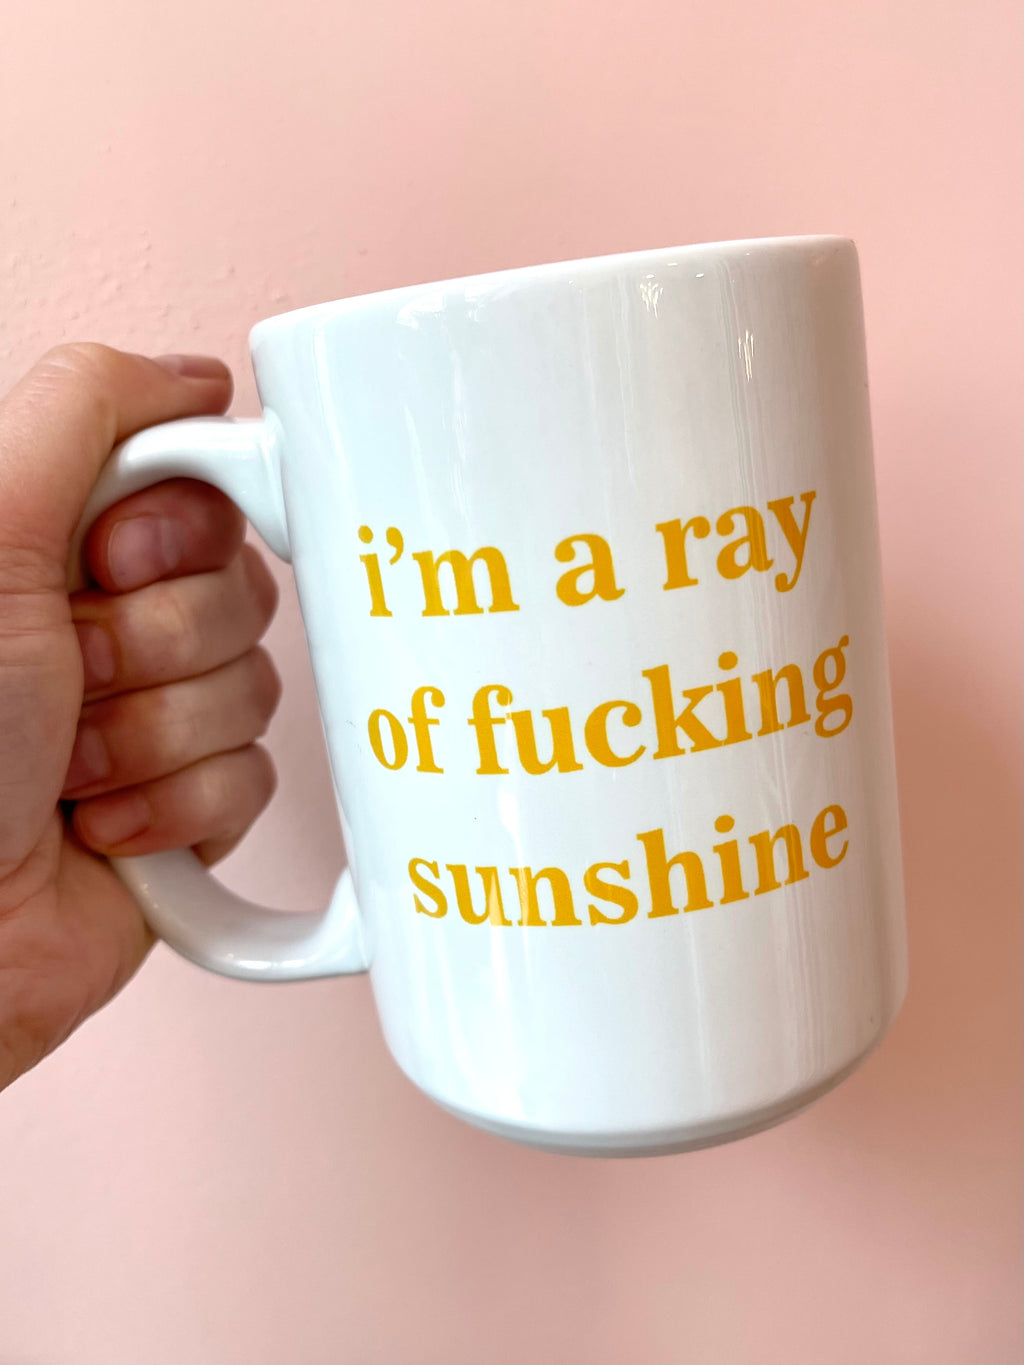 Ray Of Fucking Sunshine Mug